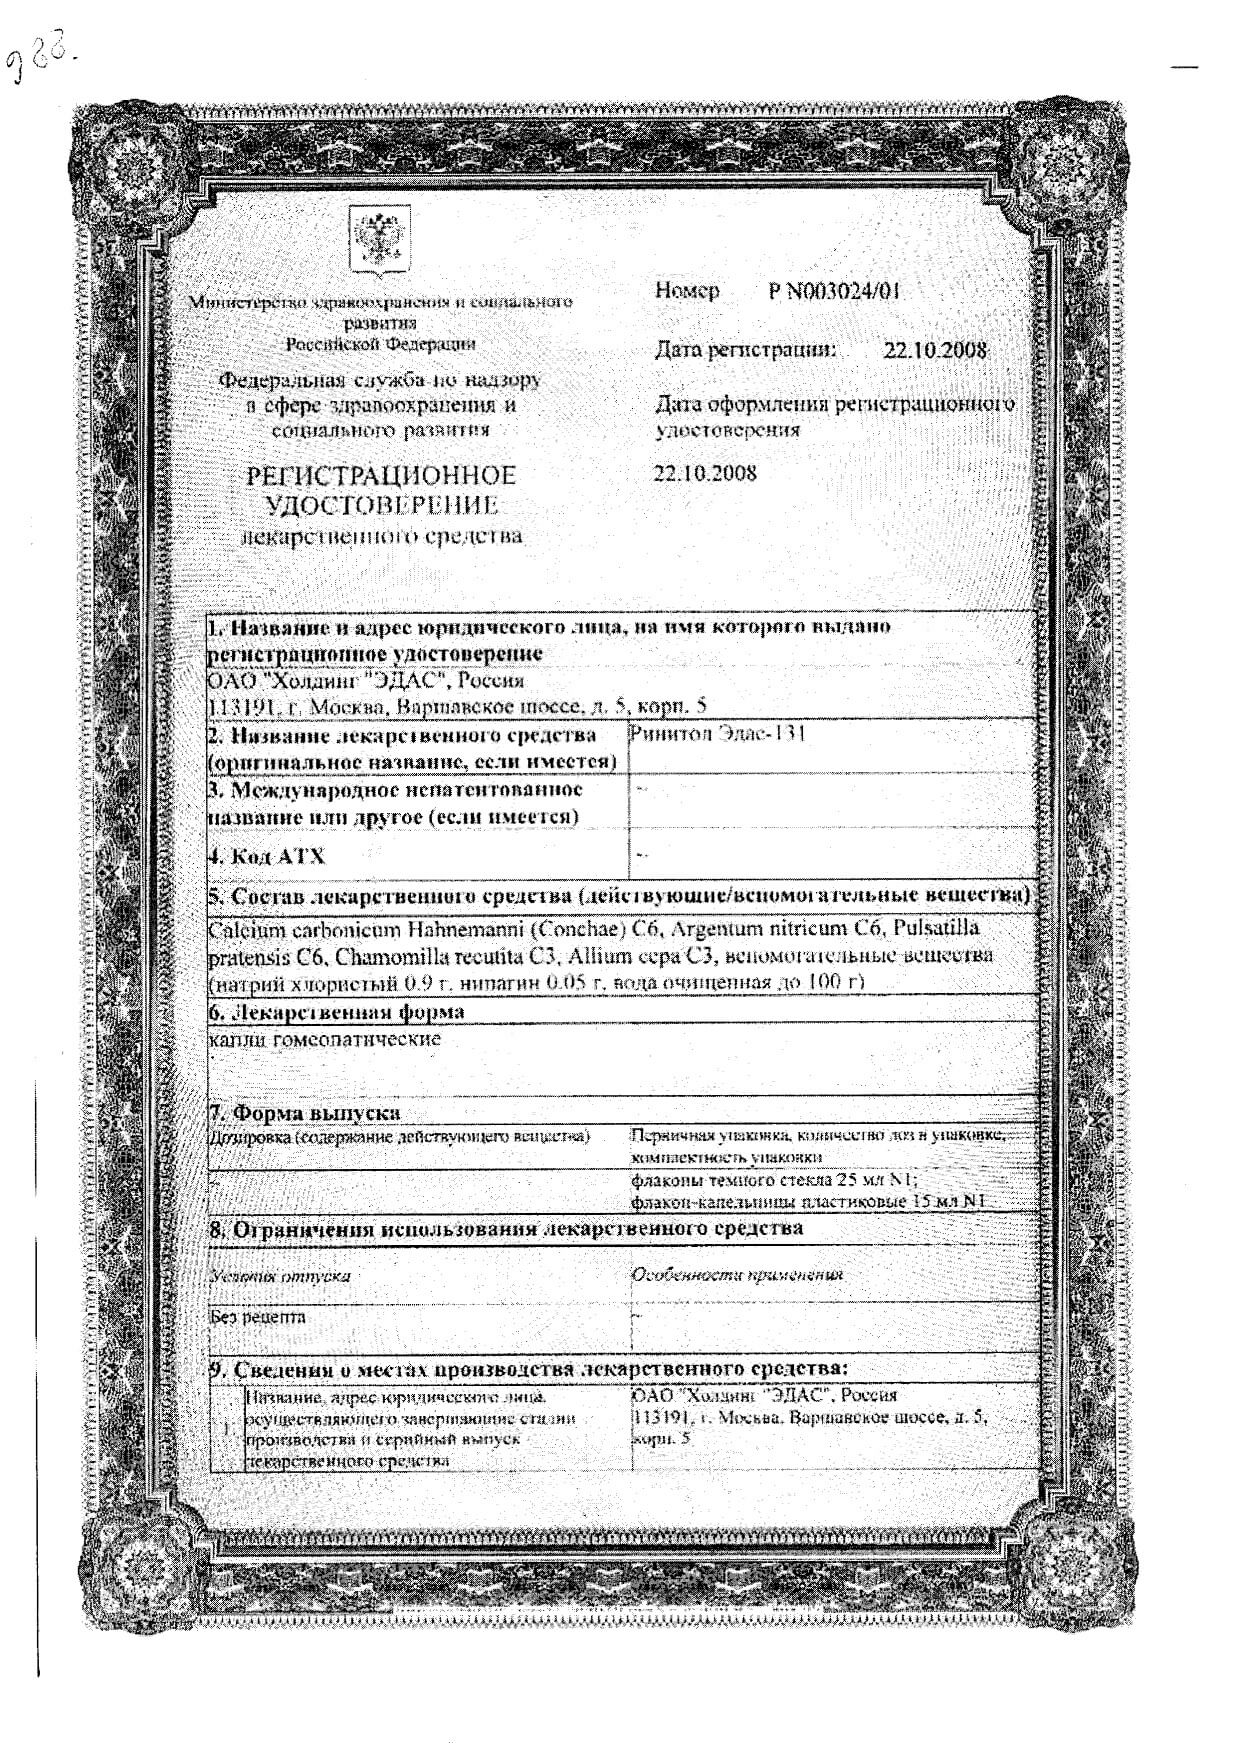 Ринитол Эдас-131 капли назальные 25мл: сертификат